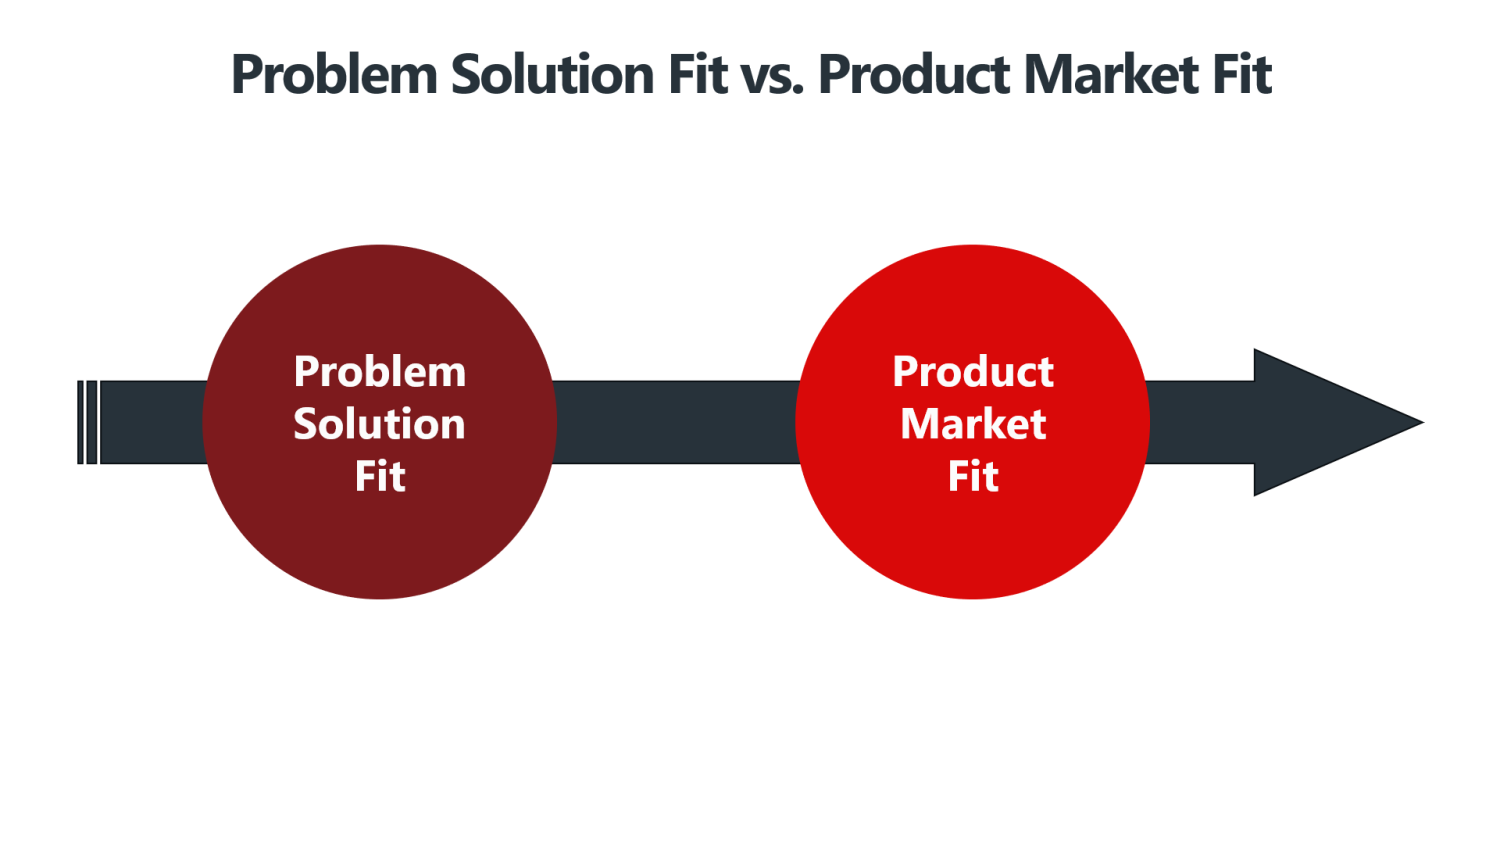 Problem Solution Fit vs. Product Market Fit